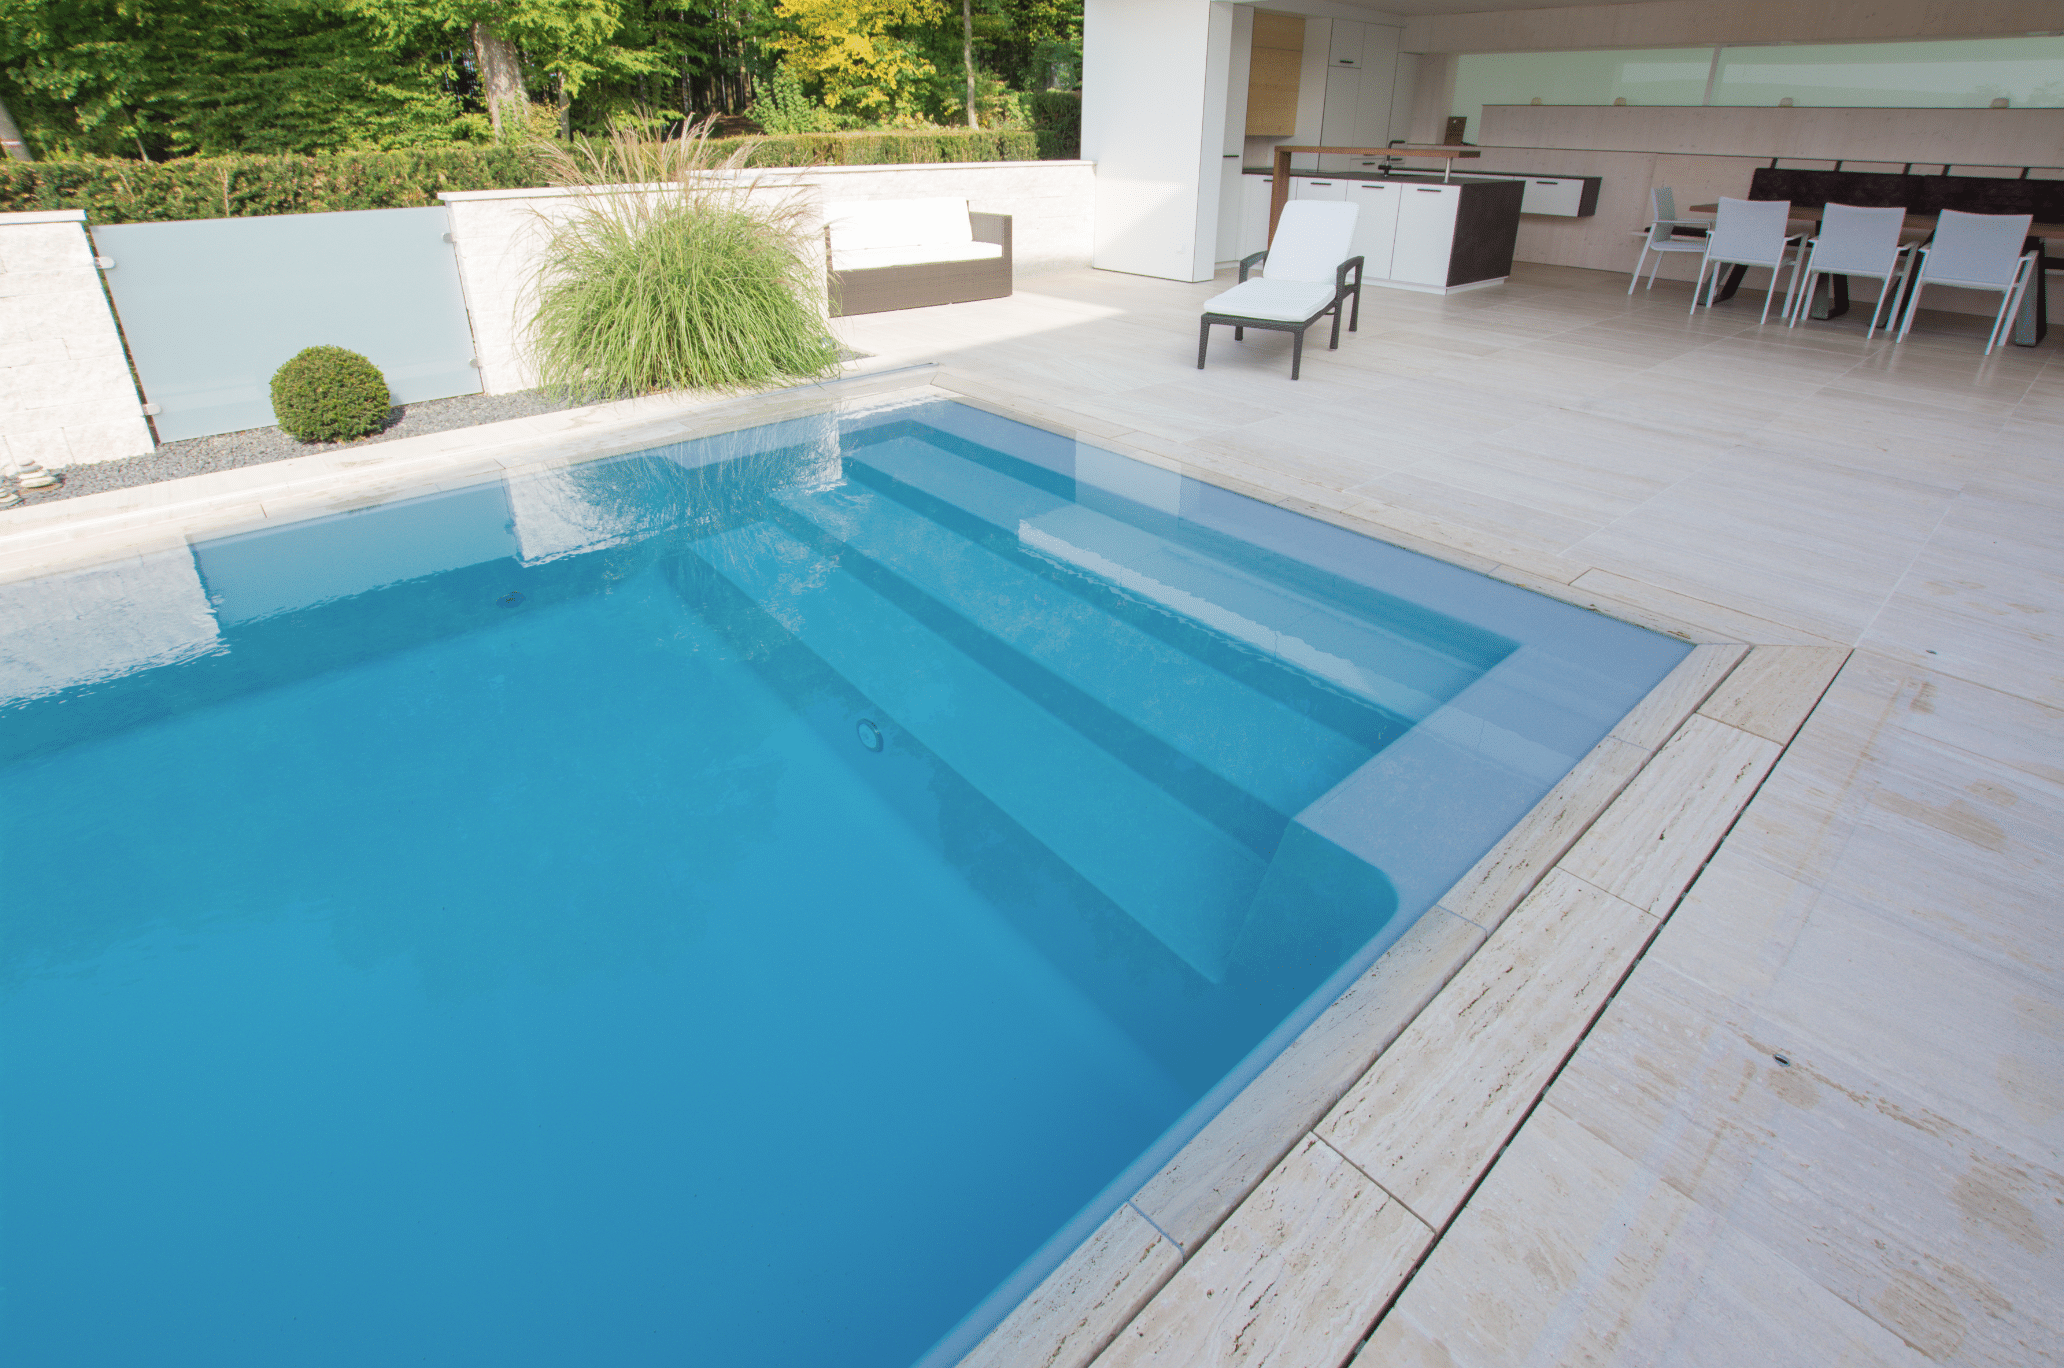 Friedrich Reitinger Schwimmbad und Wellness zeigt einen in den Boden eingelassenen, rechteckigen Pool auf einer gefliesten Terrasse mit Überdachung und einer Sitzgruppe.